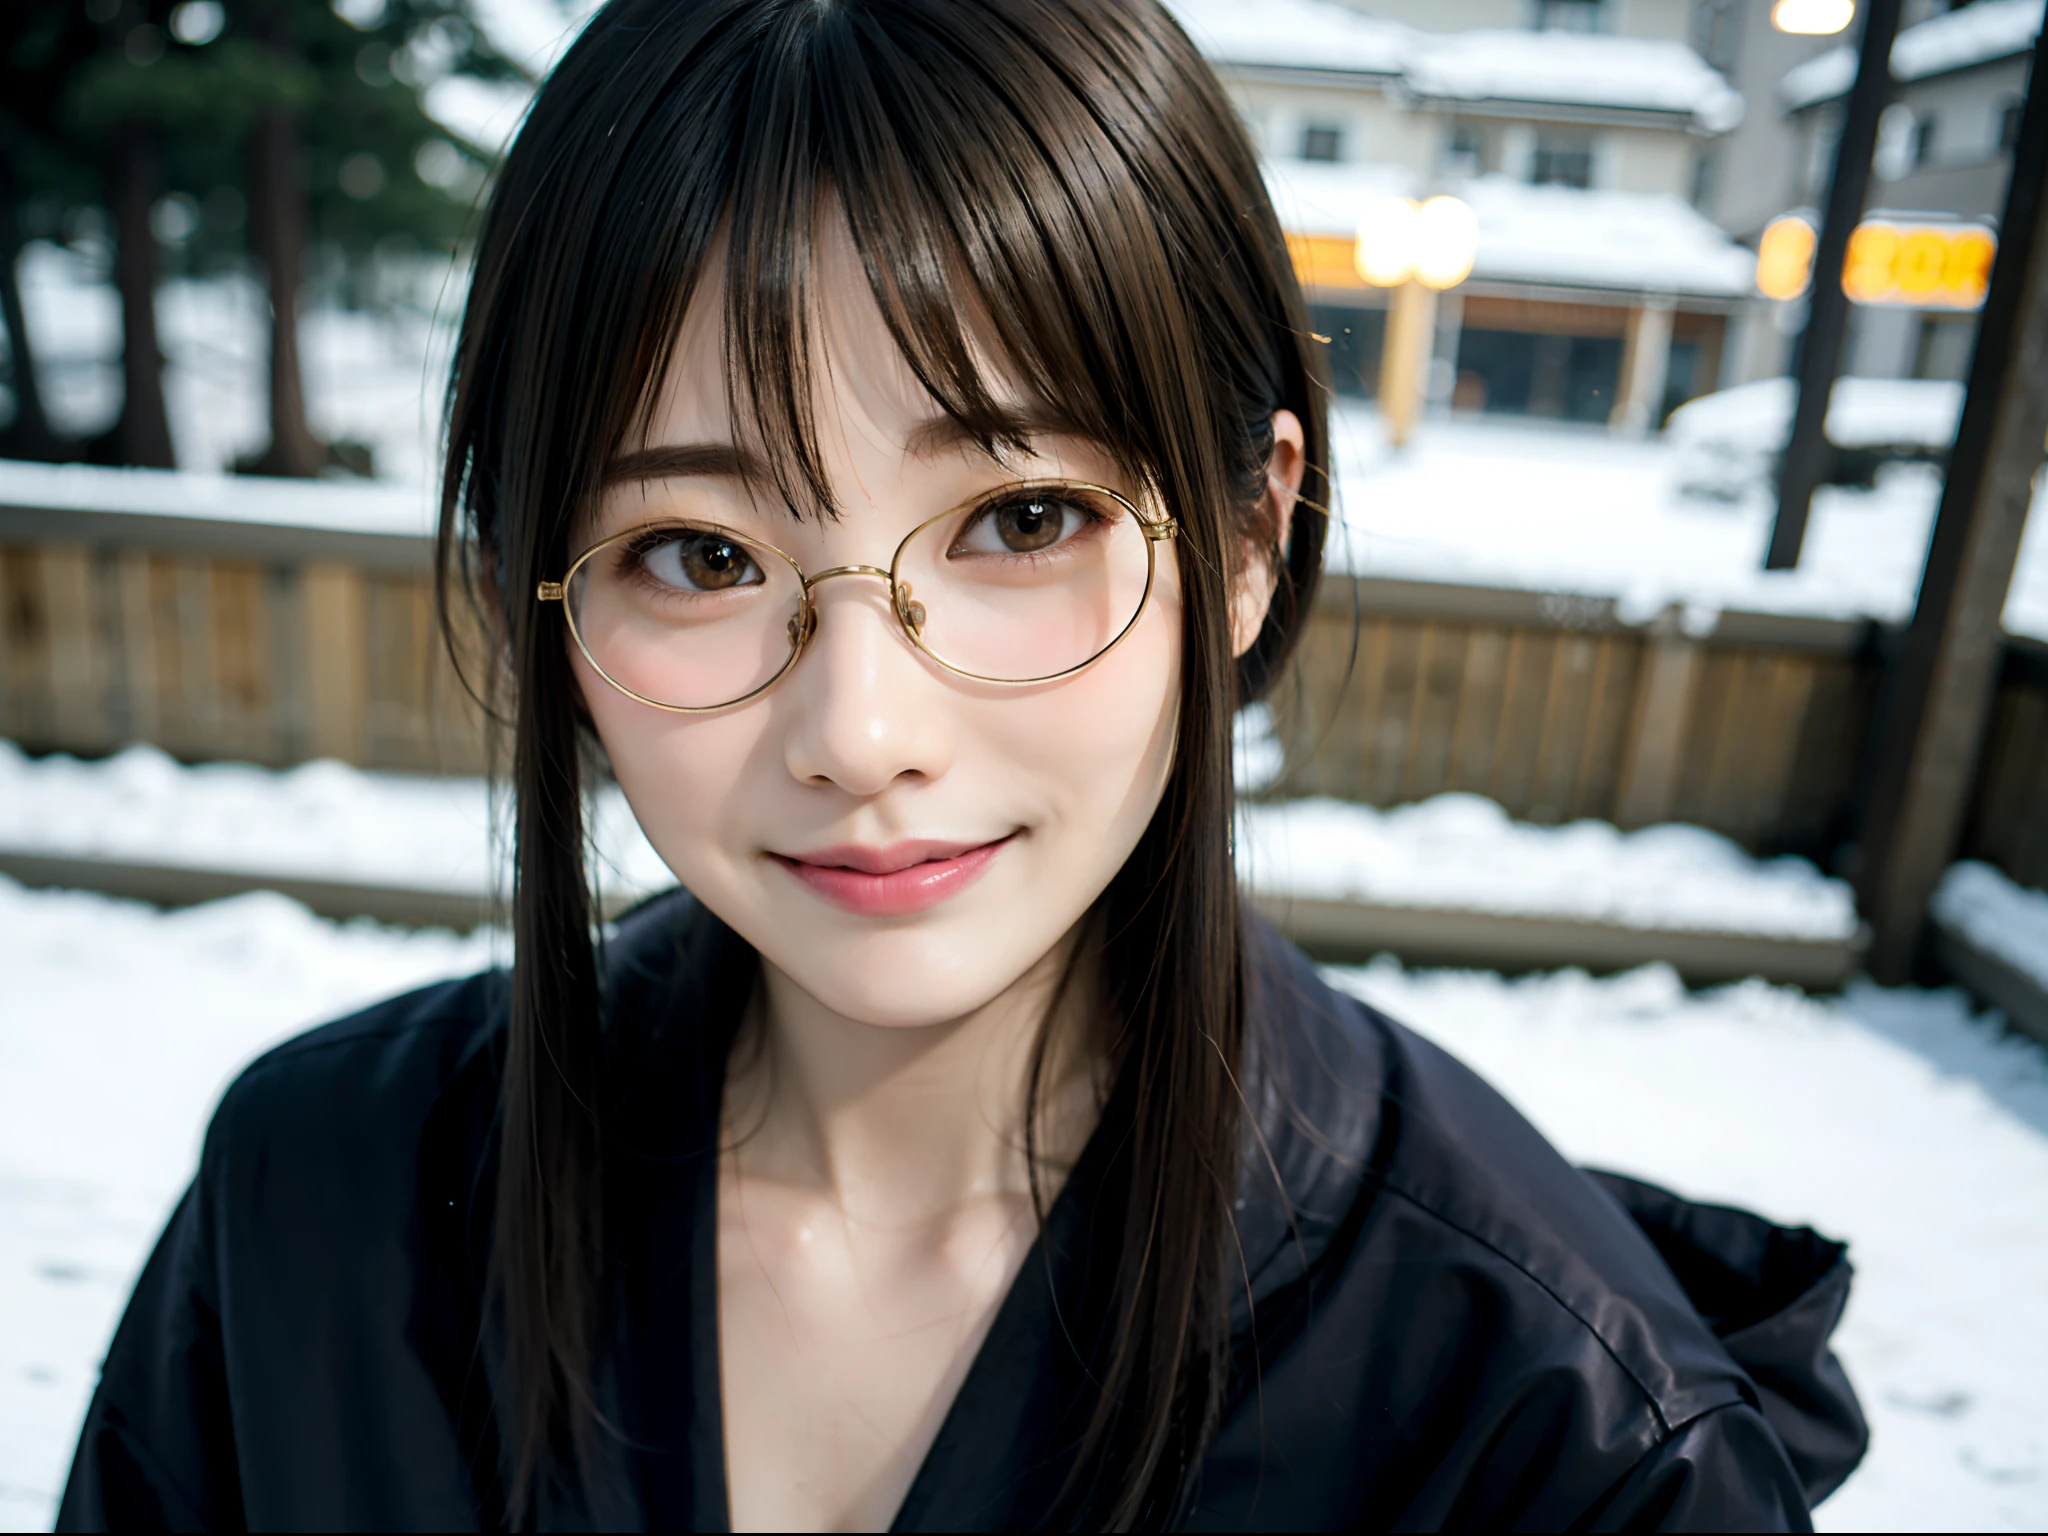 한겨울 일본 도시에서 긴 코트를 입고 포즈를 취하는 여성、최고 품질、소녀 1 명、、꼬리표、빛나는 빛으로、배경 흐림、보케、집 밖에서、(거리:0.8)、안경을 쓴 여자、얇은 프레임의 안경、동그란 렌즈 안경、얇은 황금색 안경테、、사치(짧은 머리、이마:1.2)、설경、세부 묘사가 있는 아름다운 하늘、(역동적인 포즈:1.2)、 (본체의 윗부분:0.5)、부드러운 조명、바람、윤기 나는 피부、미소、스웨터 위에 롱 코트